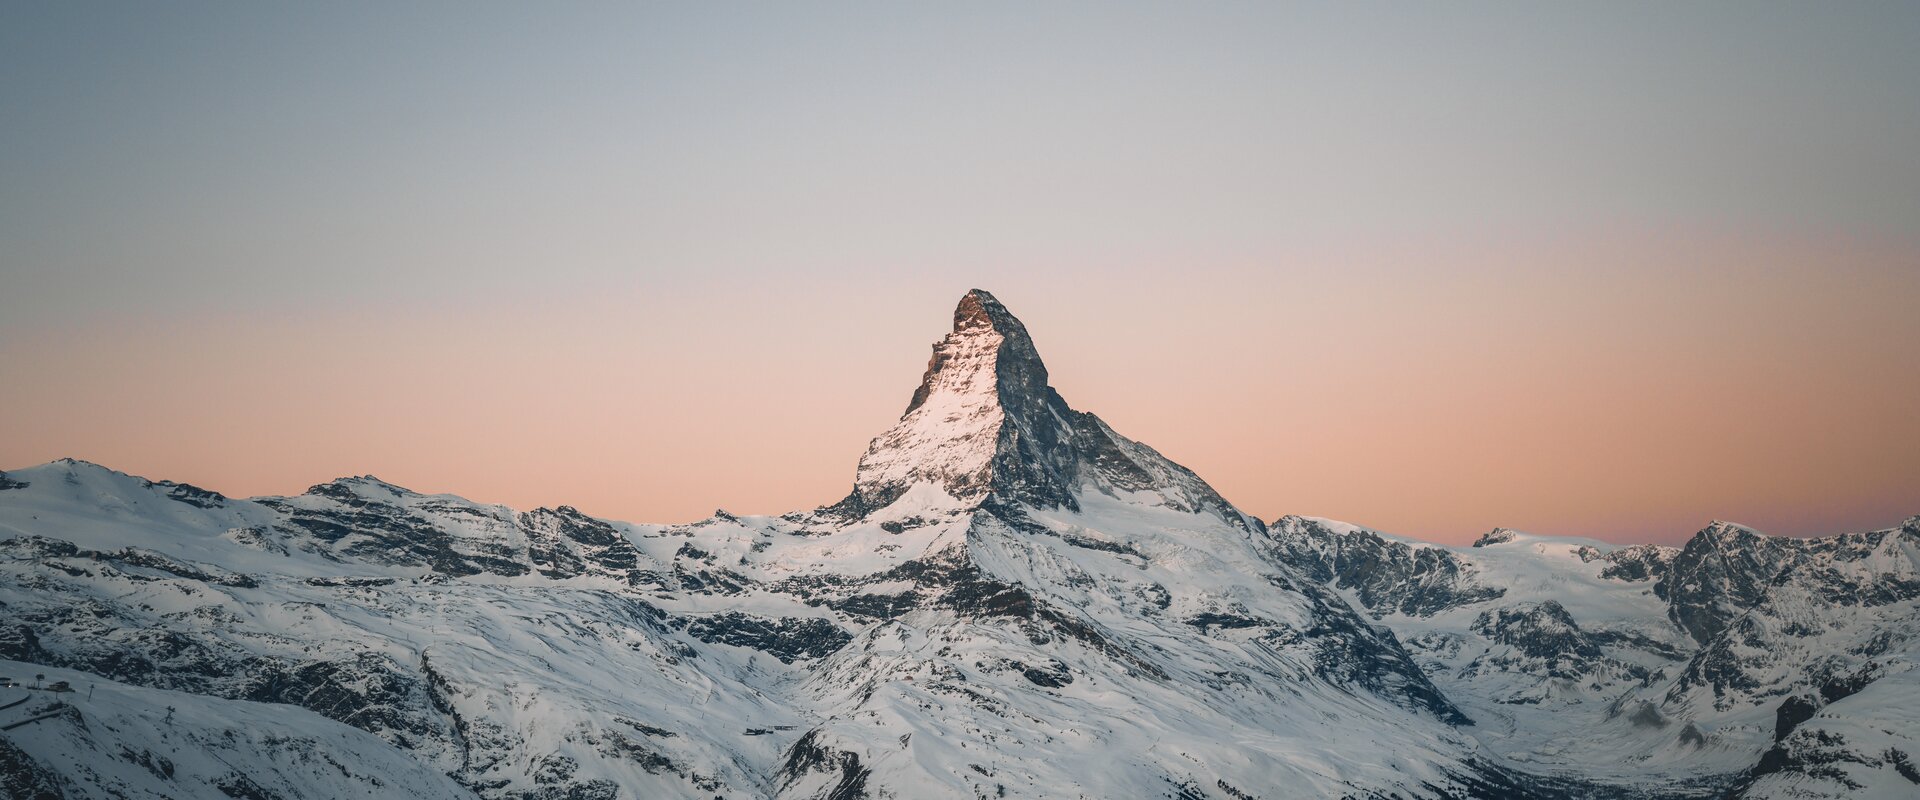 Sunrise behind the Matterhorn at Blauherd | © Gabriel Perren